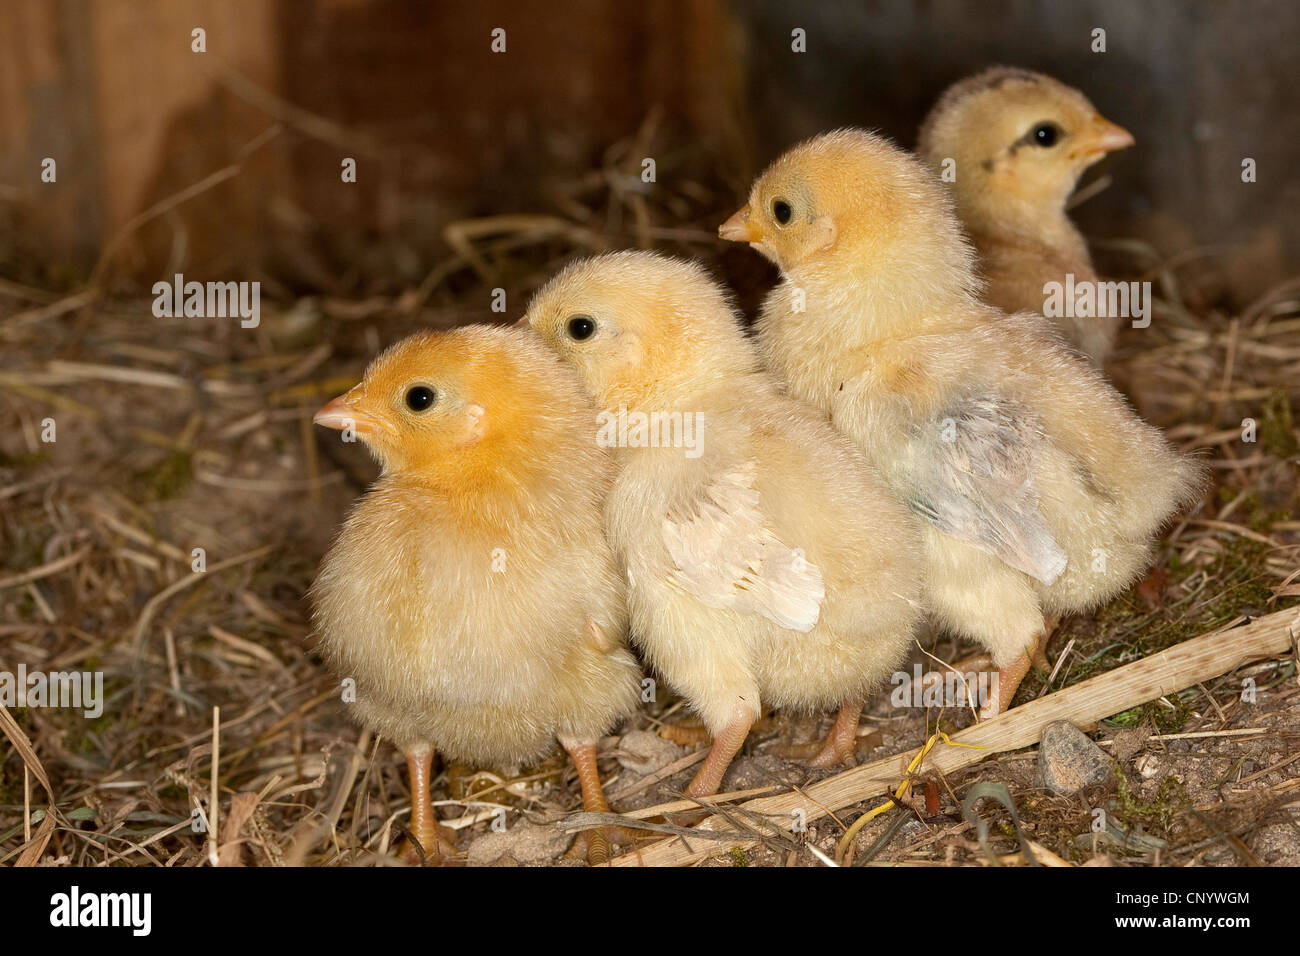 domestic fowl (Gallus gallus f. domestica), chicks in a henhouse, Germany Stock Photo